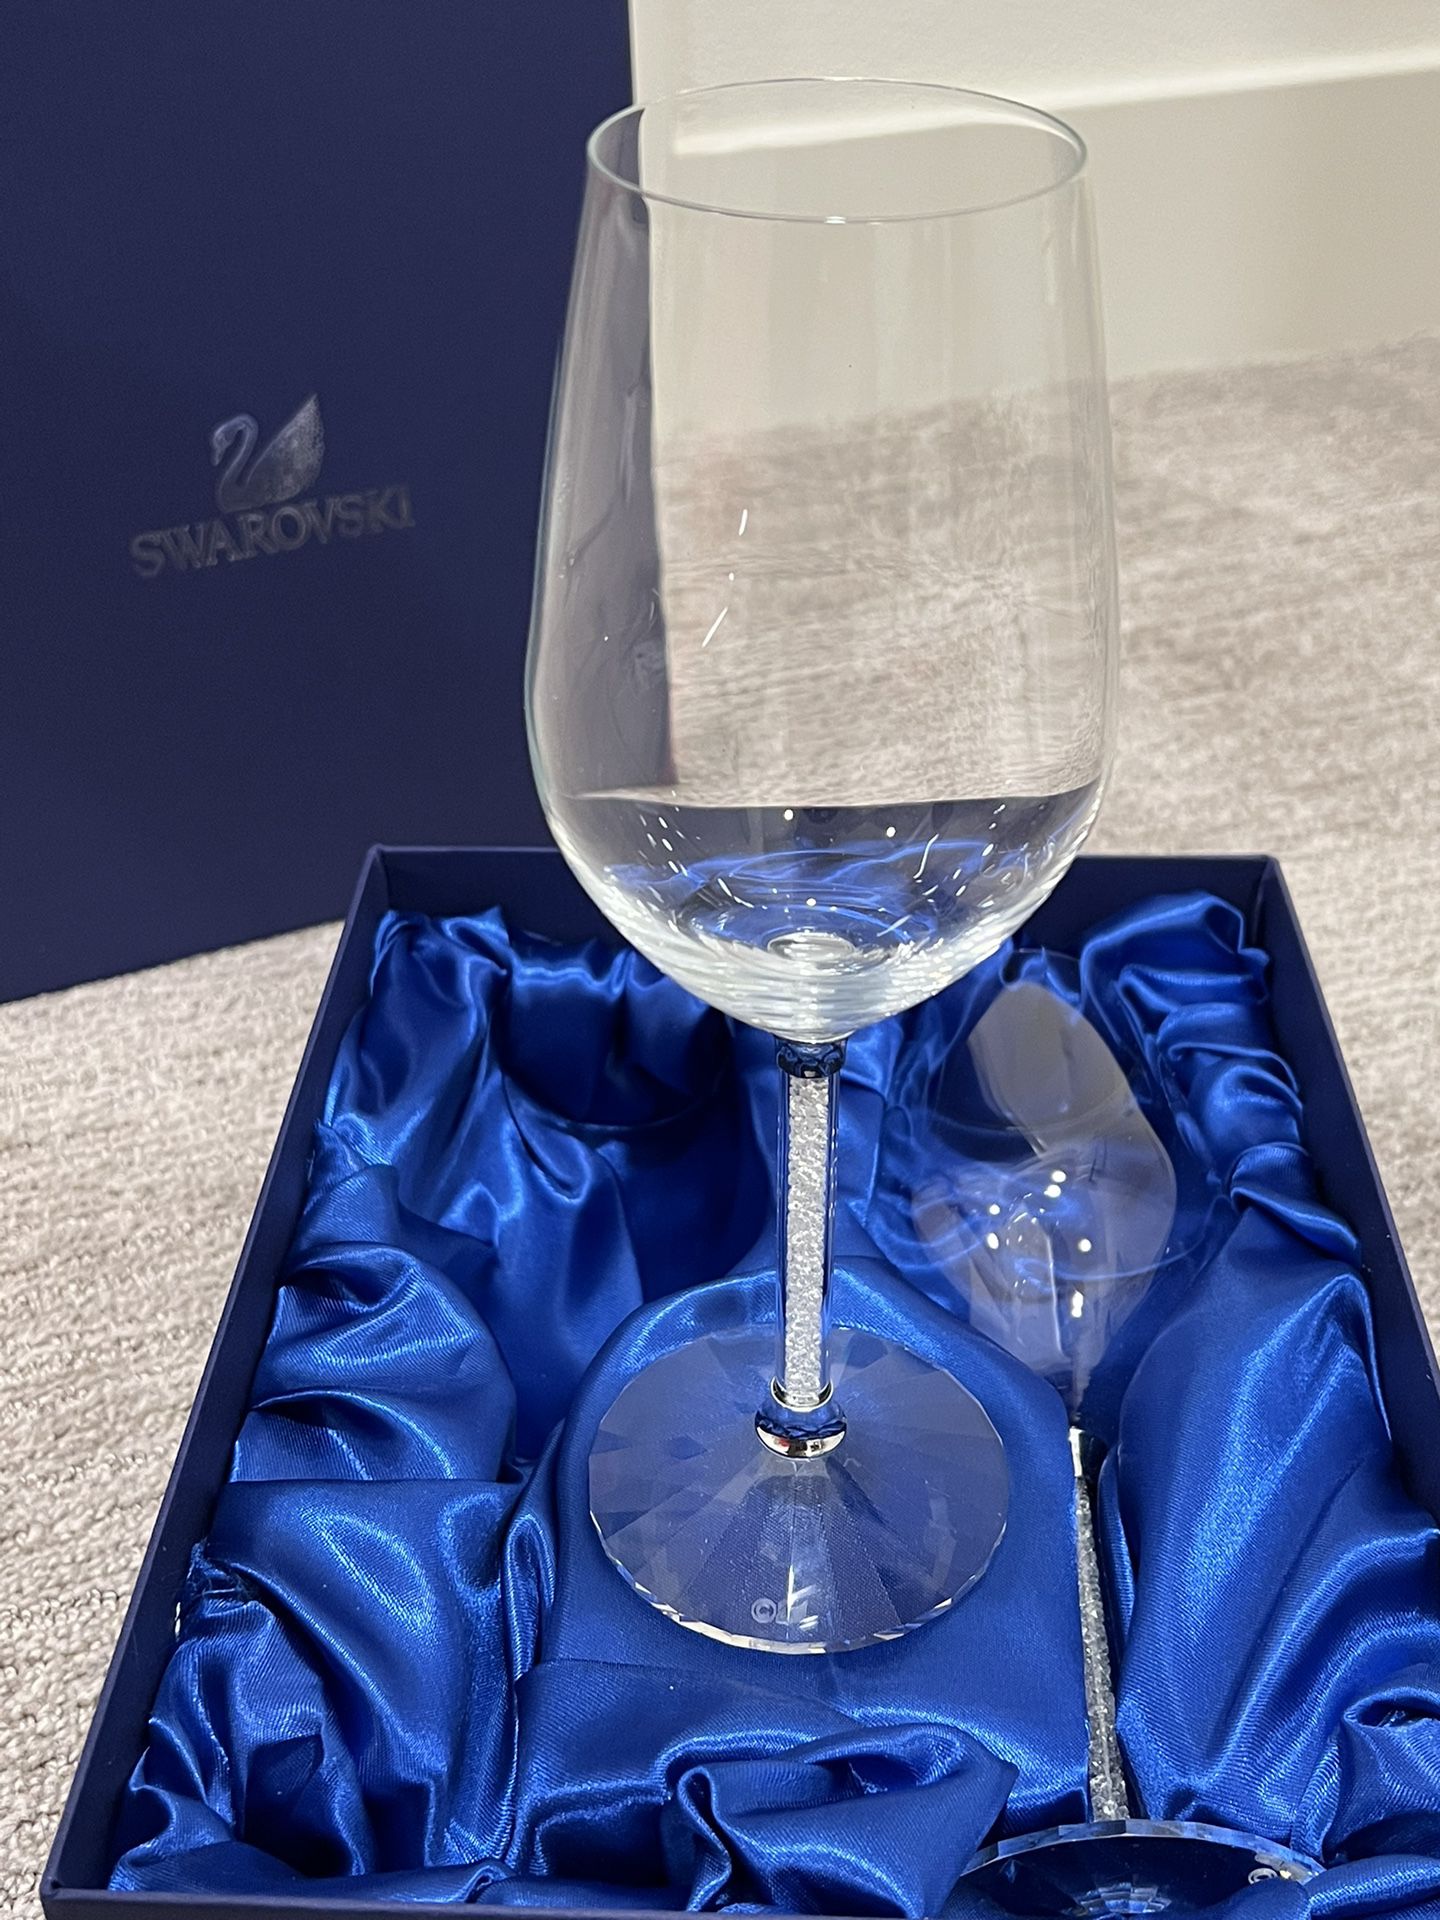 NEW SWAROVSKI CRYSTAL n WINE GLASSES SET OF 2 Gift Wedding